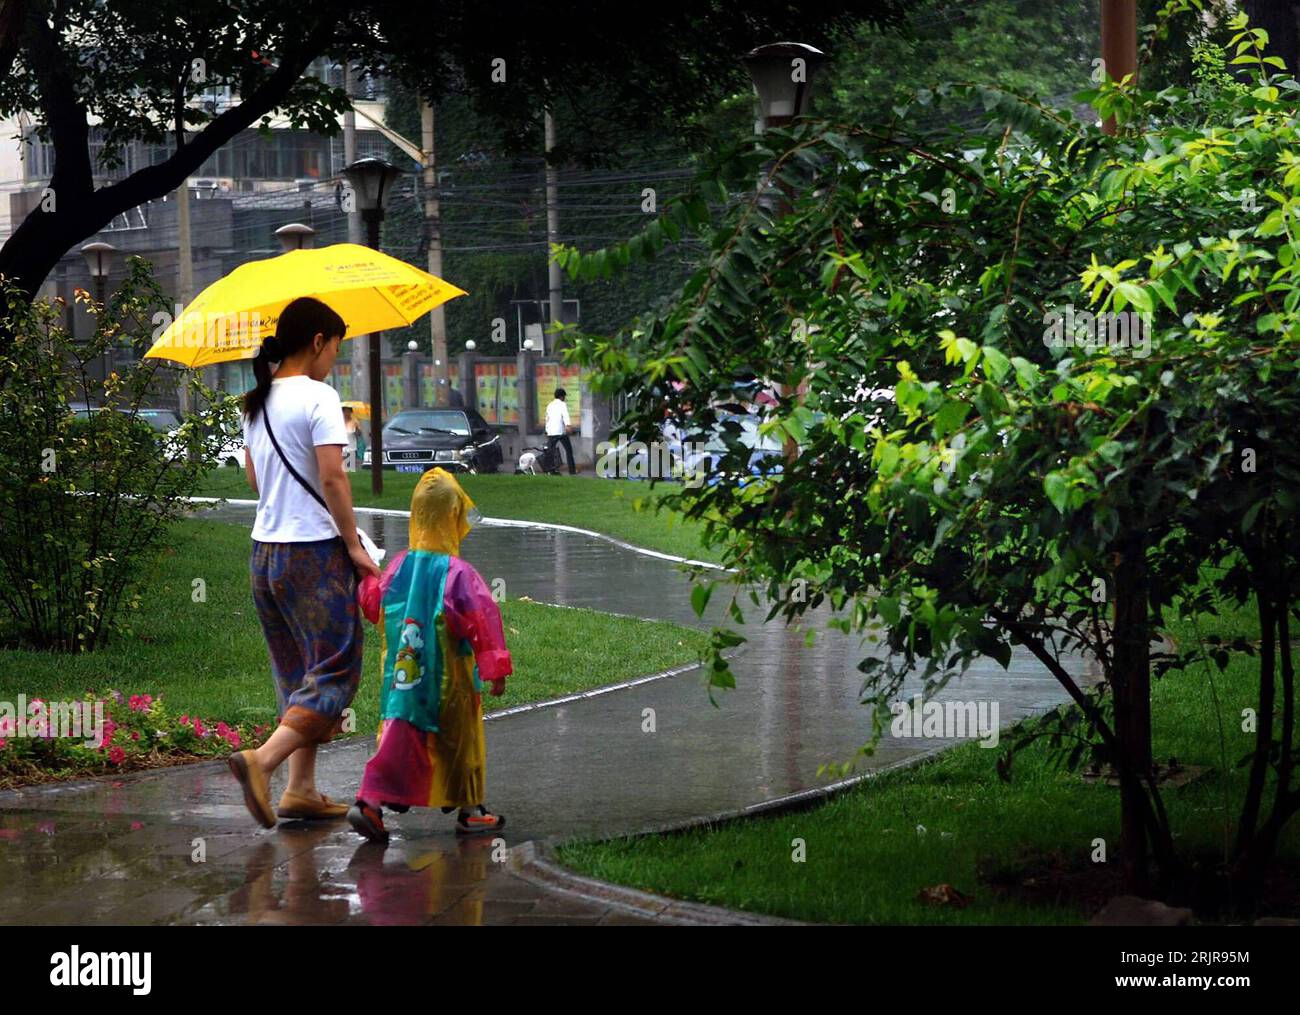 Bildnummer: 51340701  Datum: 18.07.2006  Copyright: imago/Xinhua Mutter mit Kind unter einem Regenschirm während eines Regens in Peking - PUBLICATIONxNOTxINxCHN, Personen , Landschaft; 2006, Peking, Regenschirme, Schirm, Schirme, Städte, Land, Leute, Einheimische, Einheimischer, Frau, Frauen, Kinder, Park, Parks, Regen, regnet, regnend, Regenwetter,; , quer, Kbdig, Totale, China,  , Wetter Stock Photo